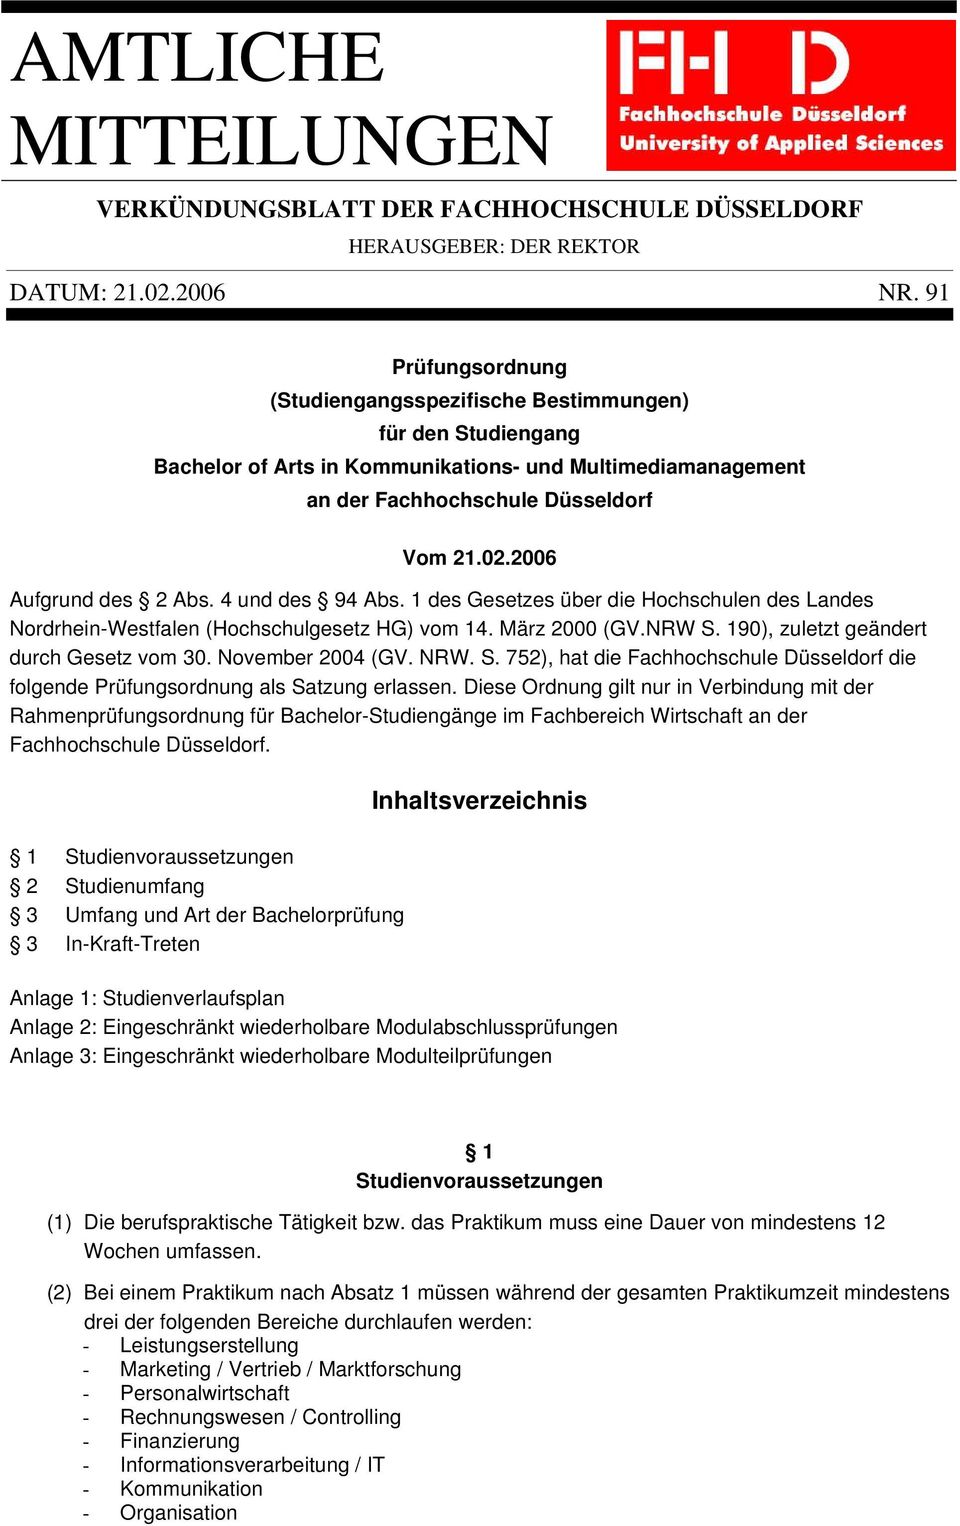 2006 Aufgrund des 2 Abs. 4 und des 94 Abs. 1 des Gesetzes über die Hochschulen des Landes Nordrhein-Westfalen (Hochschulgesetz HG) vom 14. März 2000 (GV.NRW S.